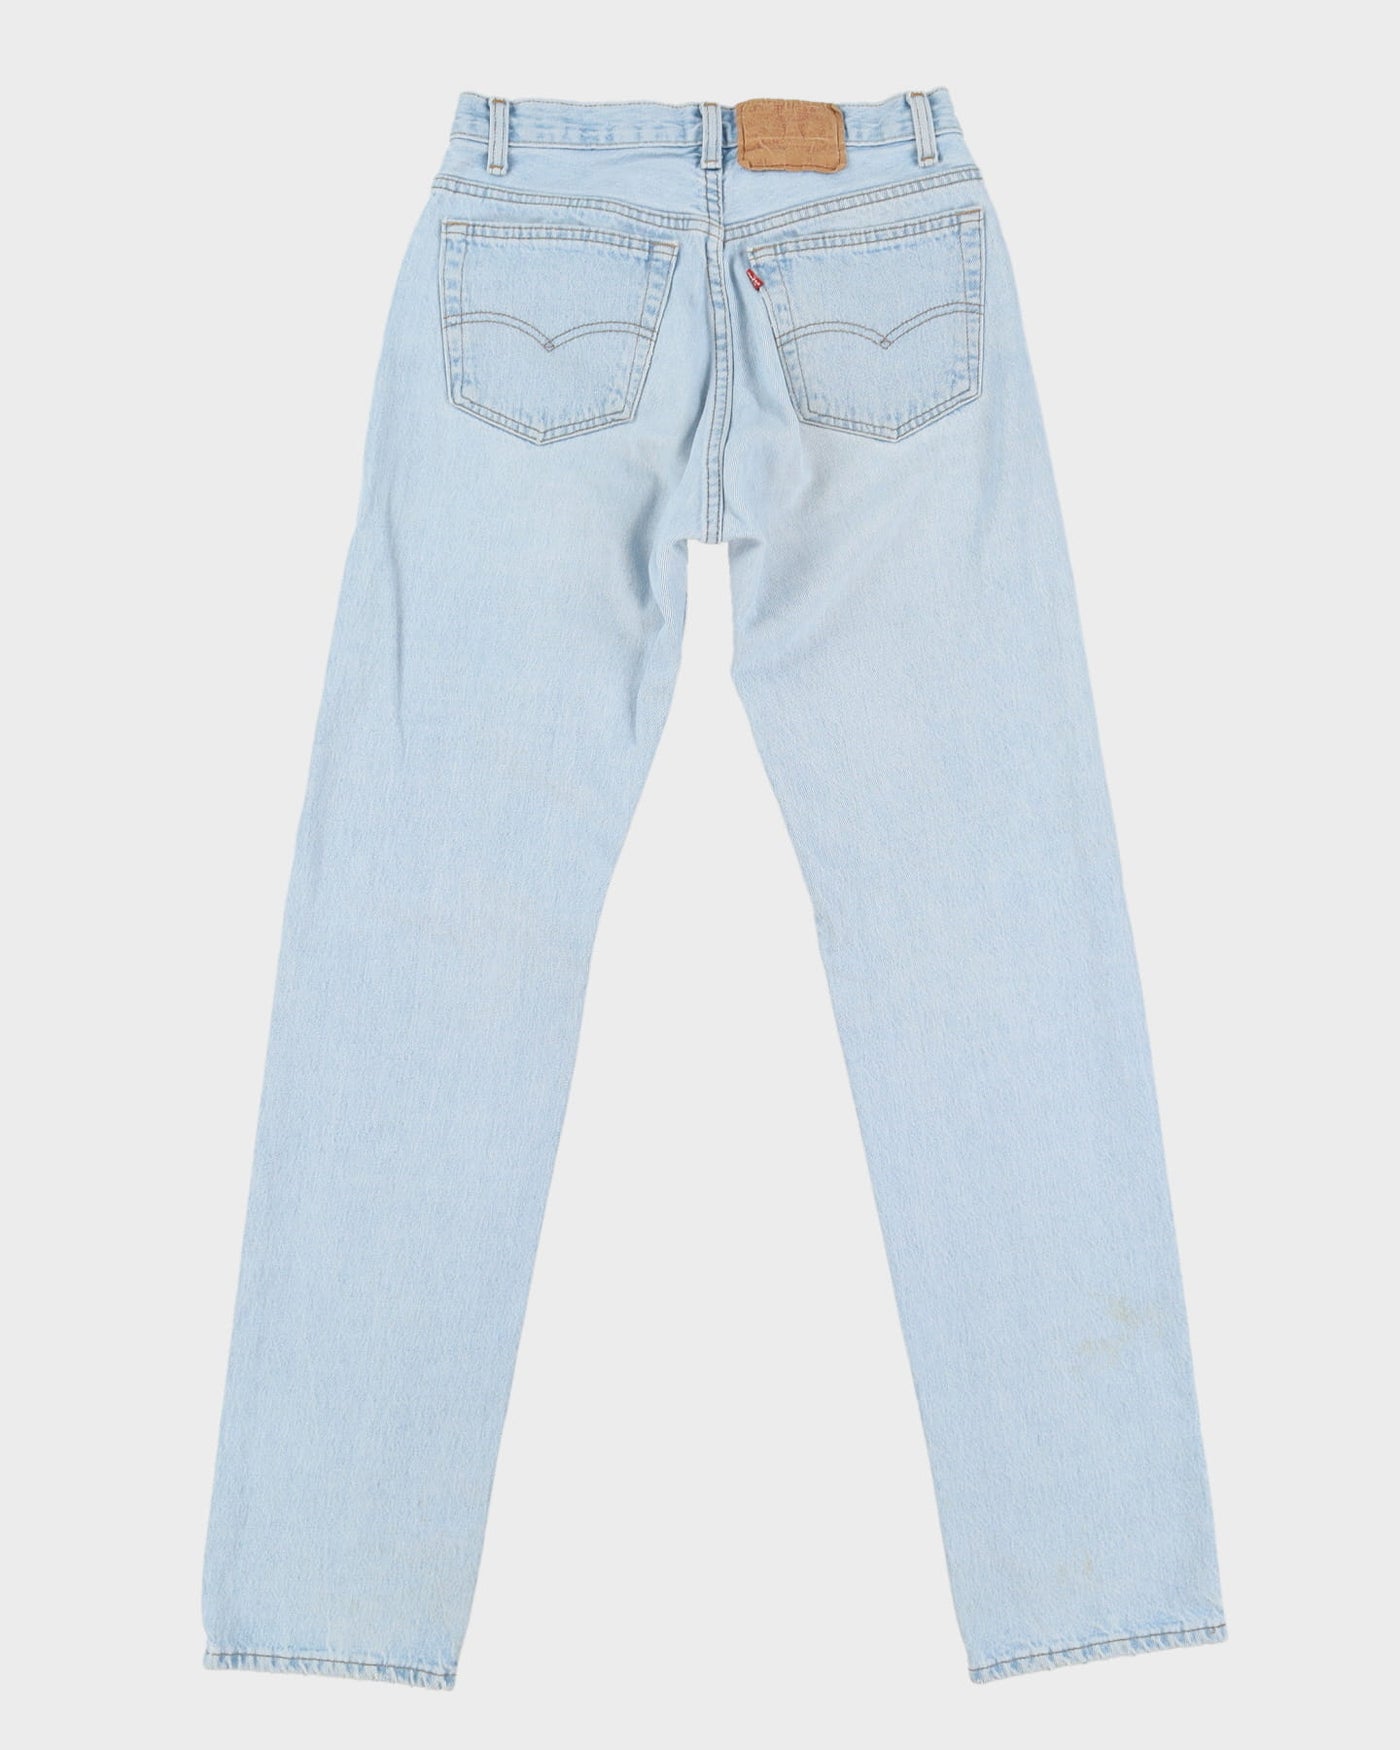 Vintage 80s Levi's 501 Blue Jeans - W31 L34